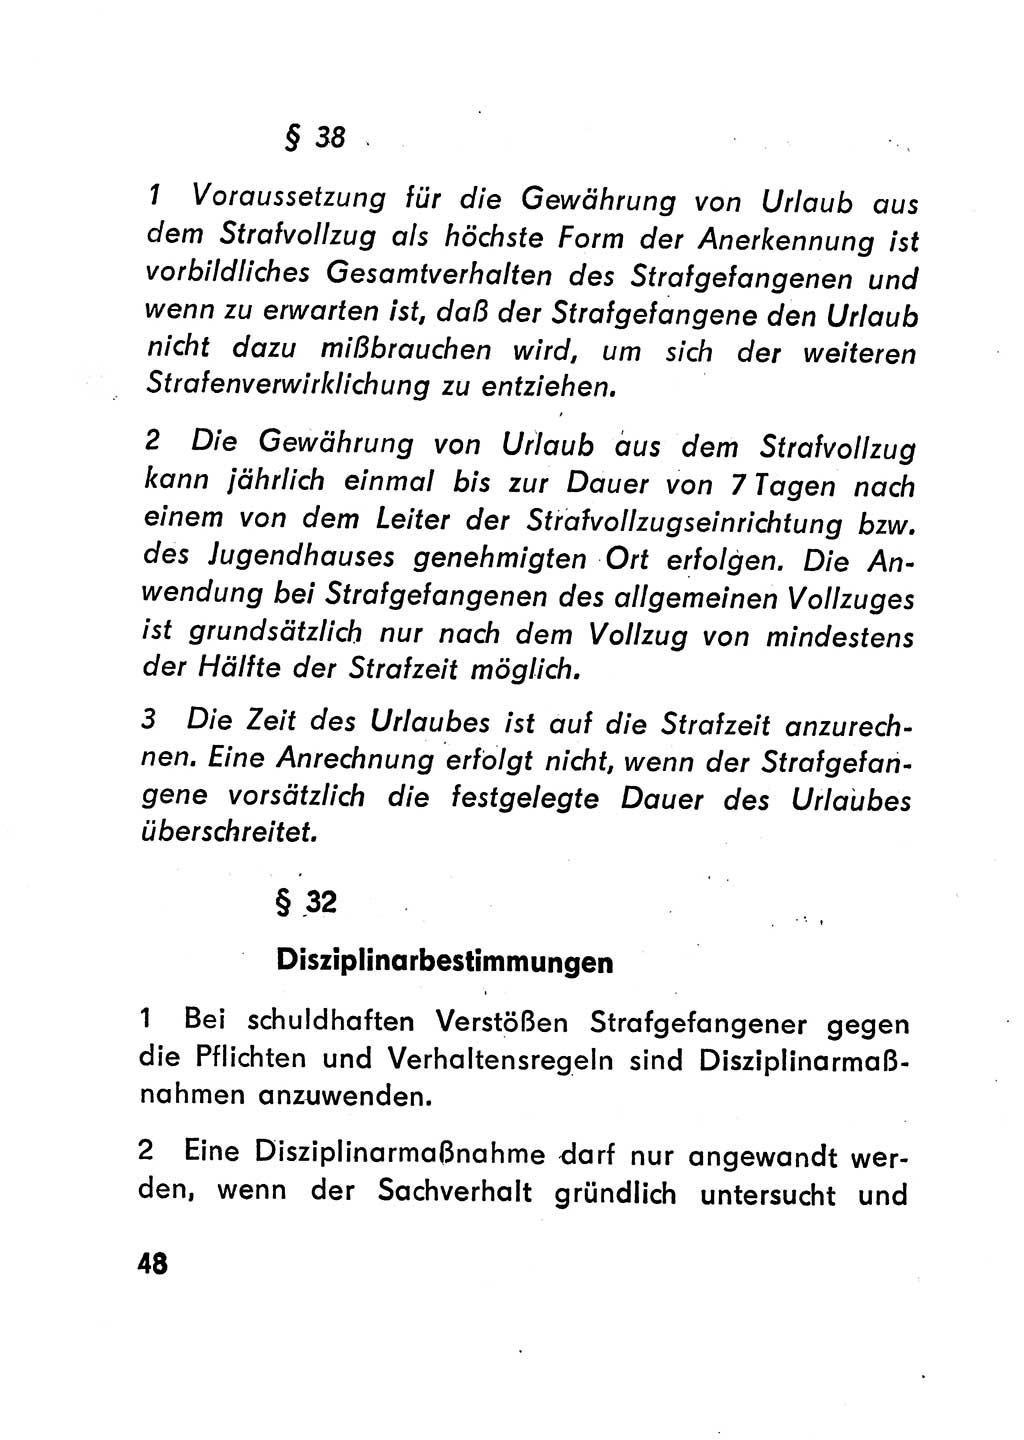 Gesetz über den Vollzug der Strafen mit Freiheitsentzug (Strafvollzugsgesetz) - StVG - [Deutsche Demokratische Republik (DDR)] 1977, Seite 48 (StVG DDR 1977, S. 48)